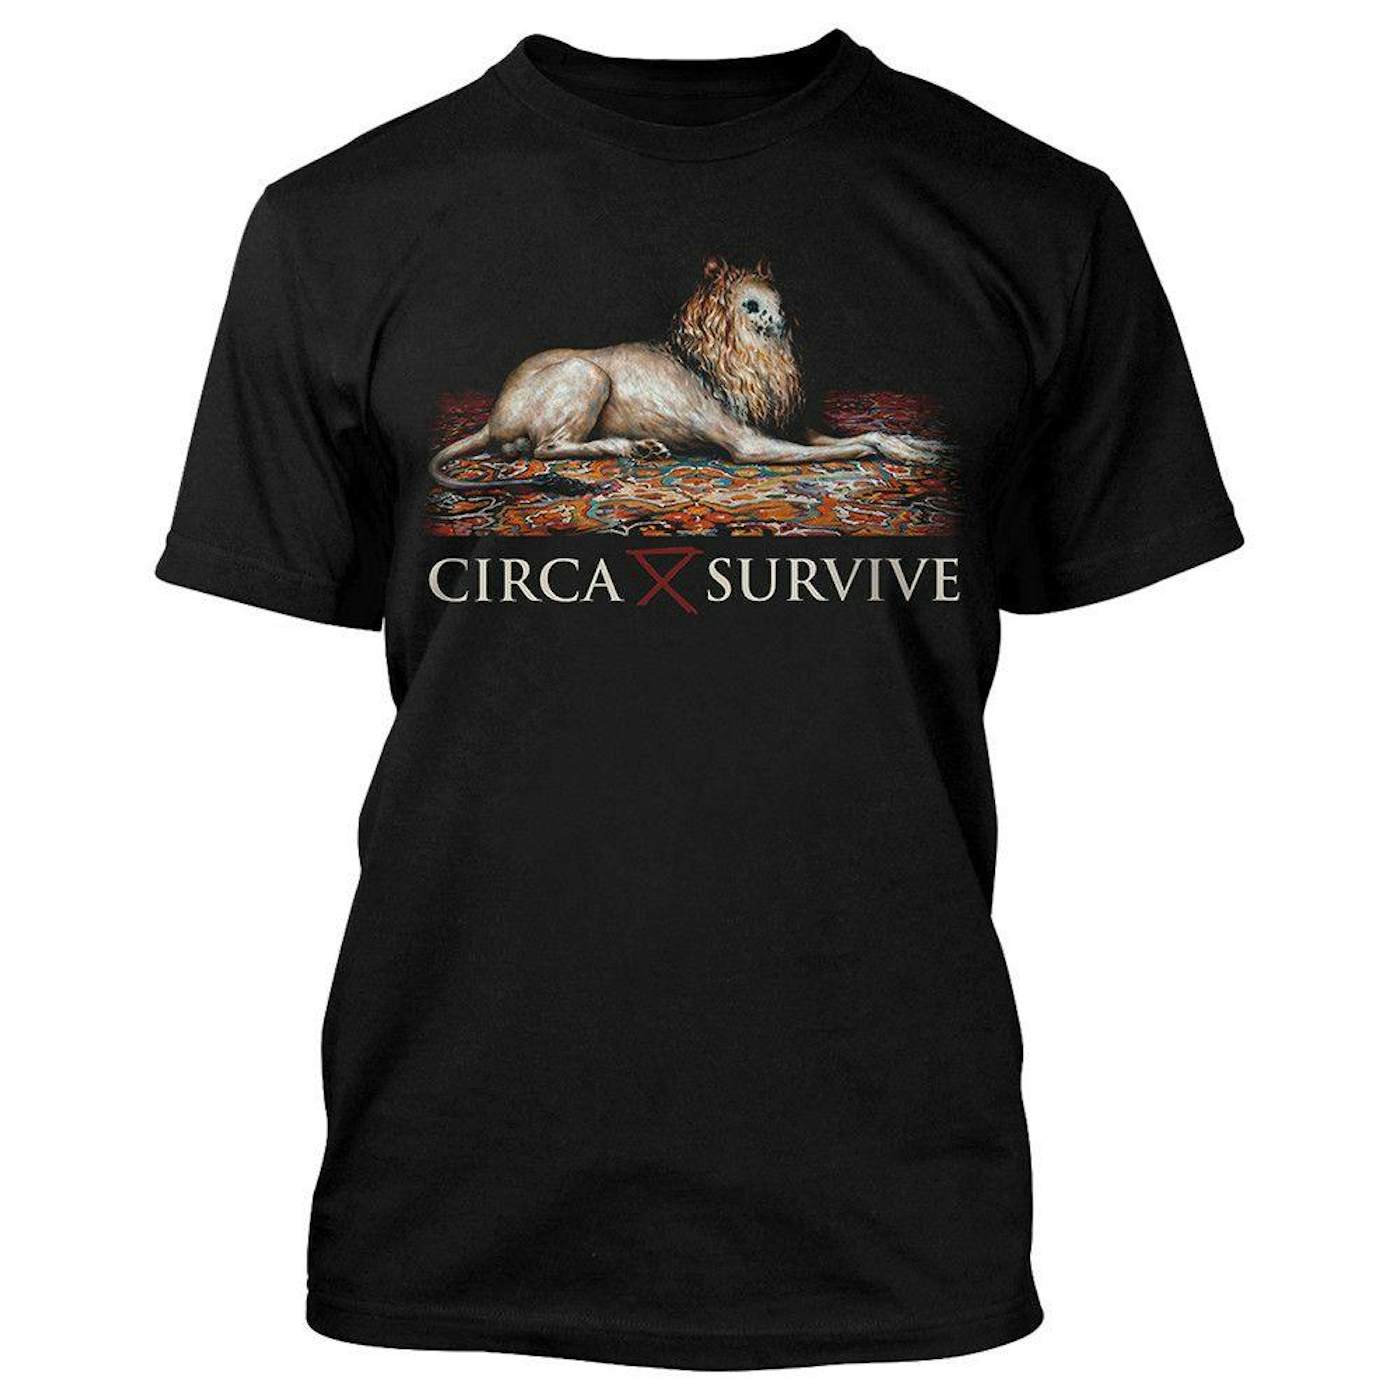 Circa Survive Lion T-Shirt - Men's